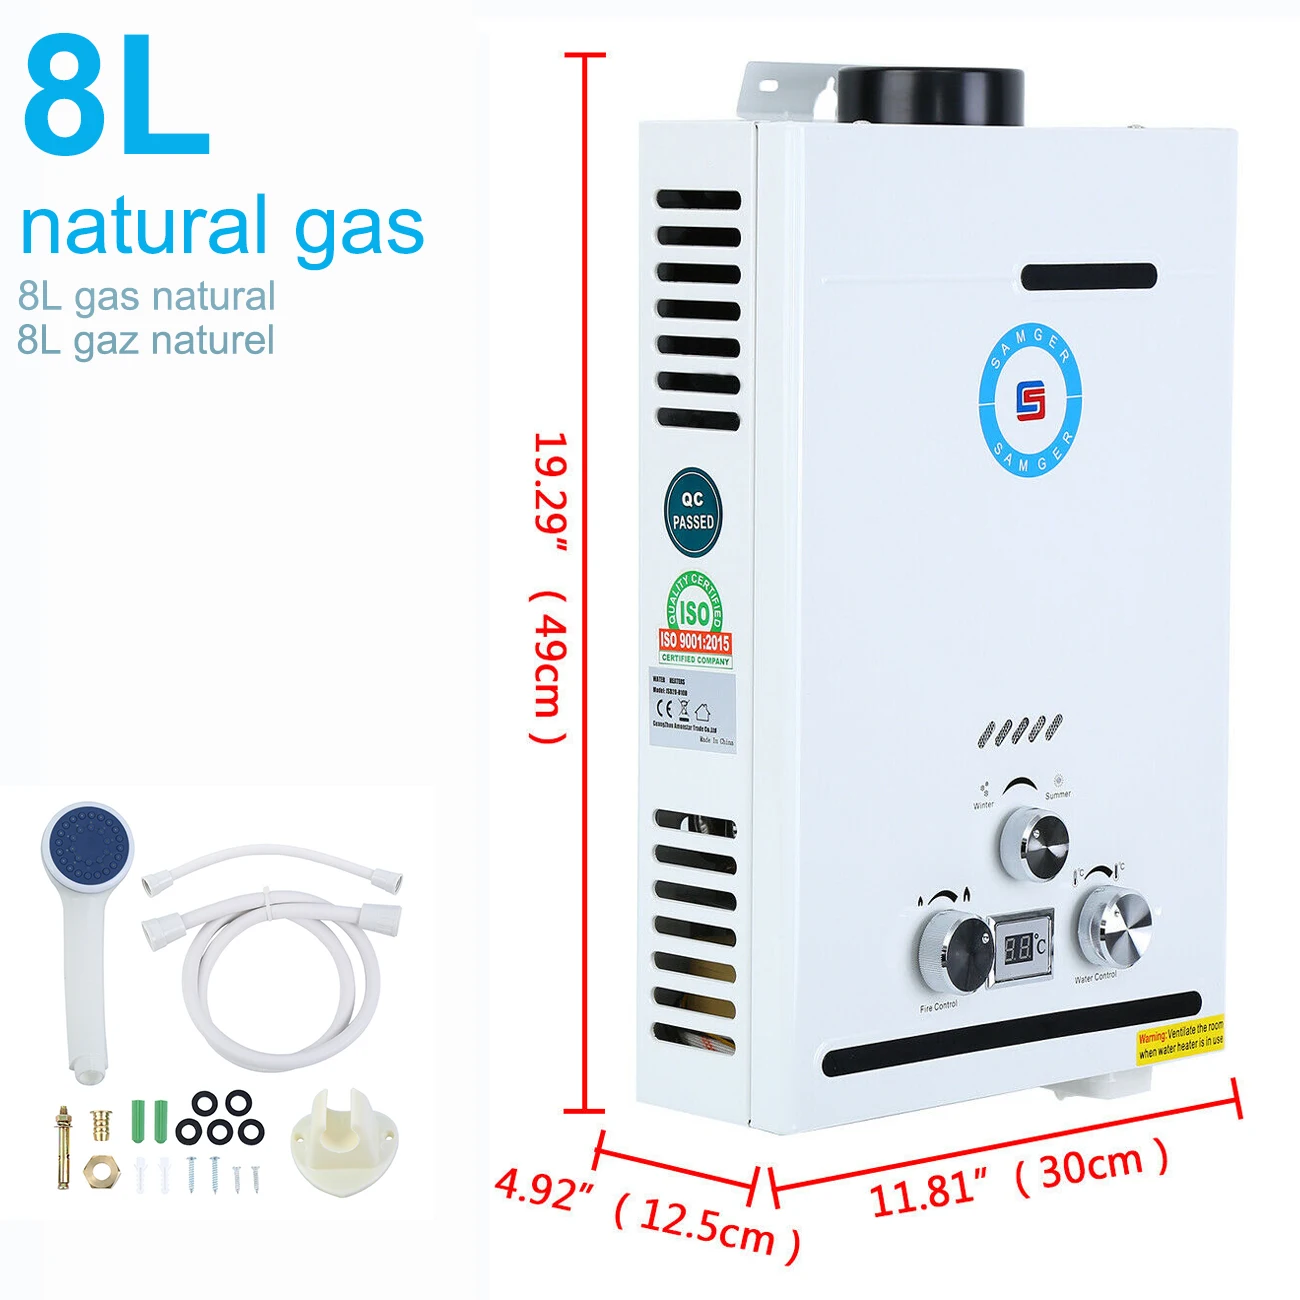 Natural Gas Water Heater Durchlauferhitzer Warmwasserbereiter Boiler 8L 16KW DE 